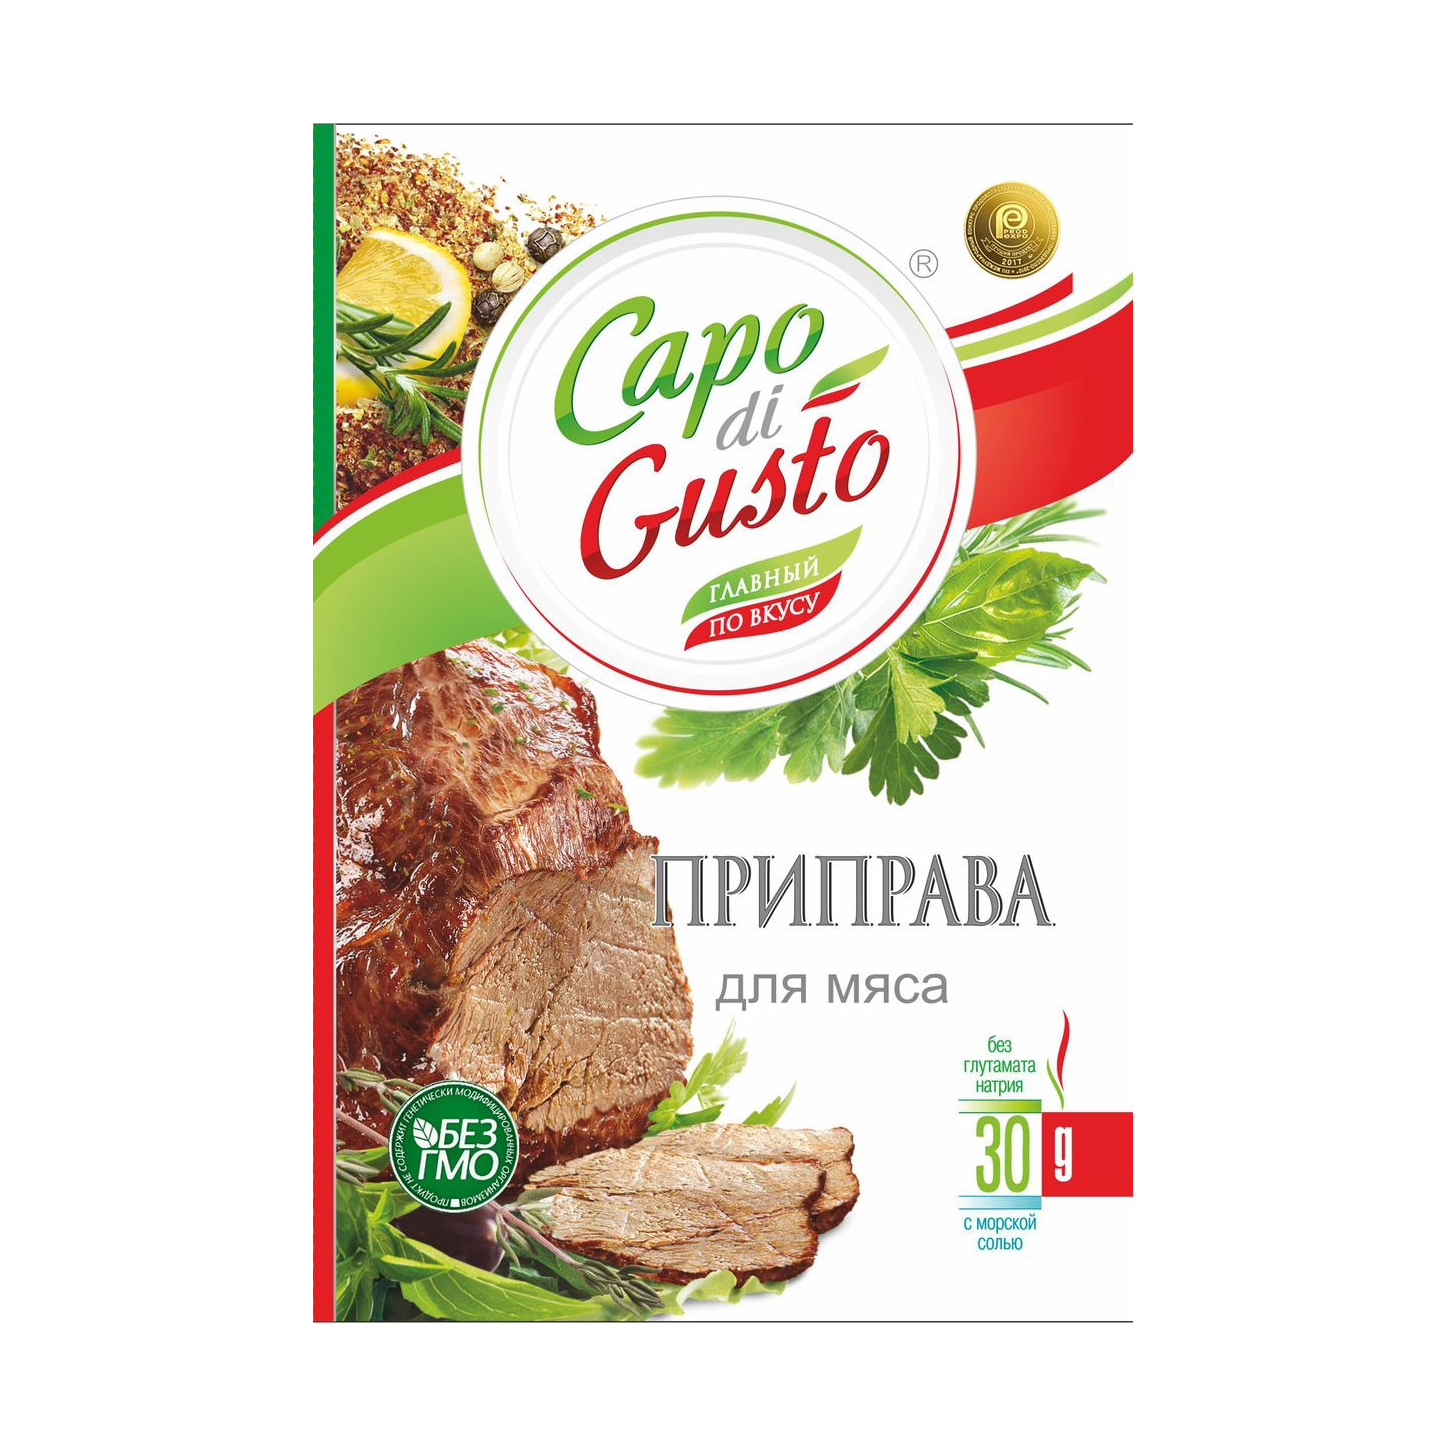 Приправа Capo di Gusto для мяса 30 г приправа capo di gusto для рыбы 30 г